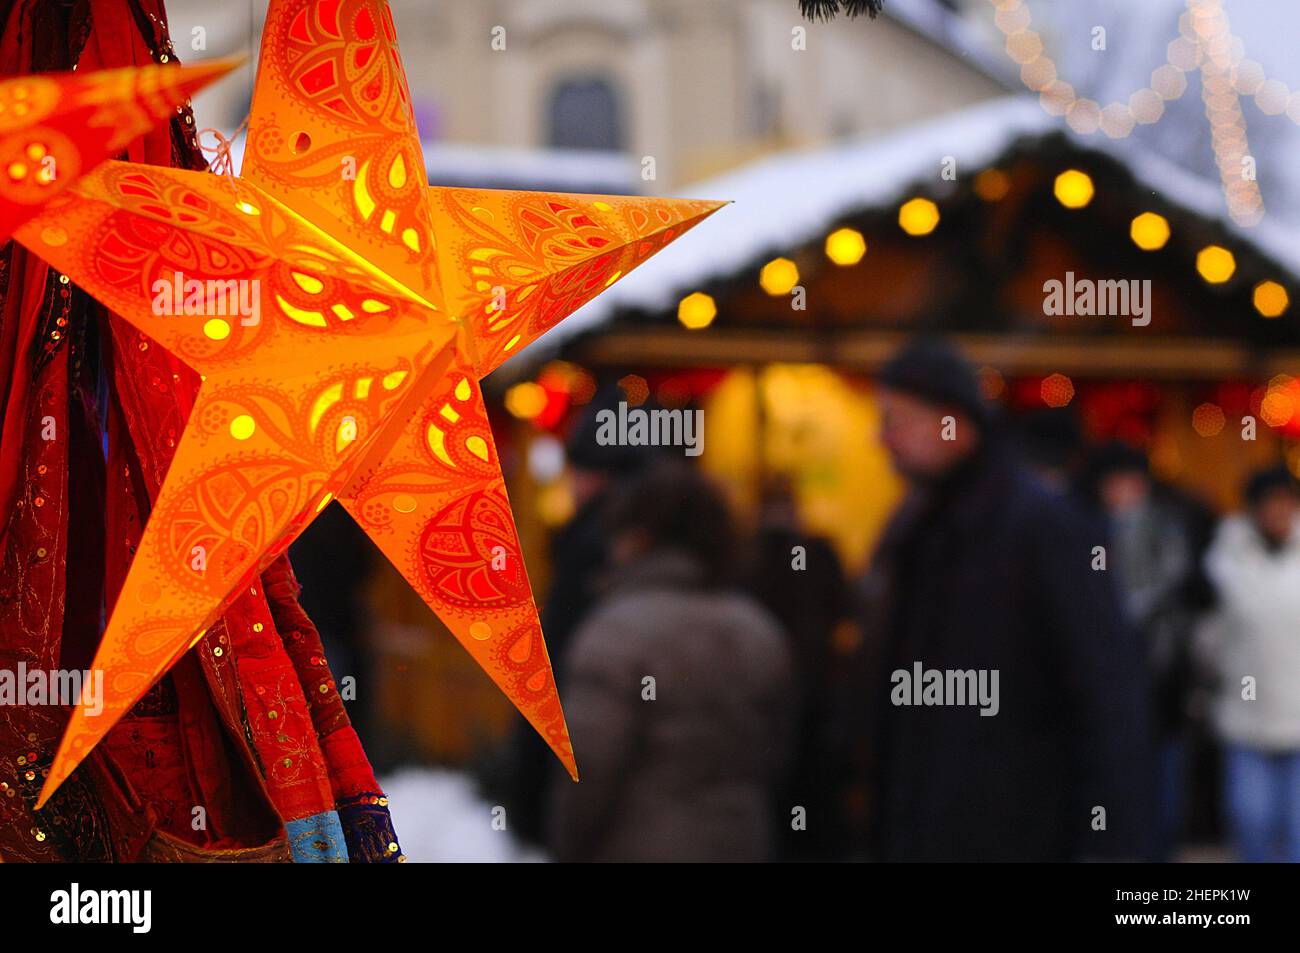 Estrella de Navidad iluminada en el mercado de Navidad, Alemania Foto de stock